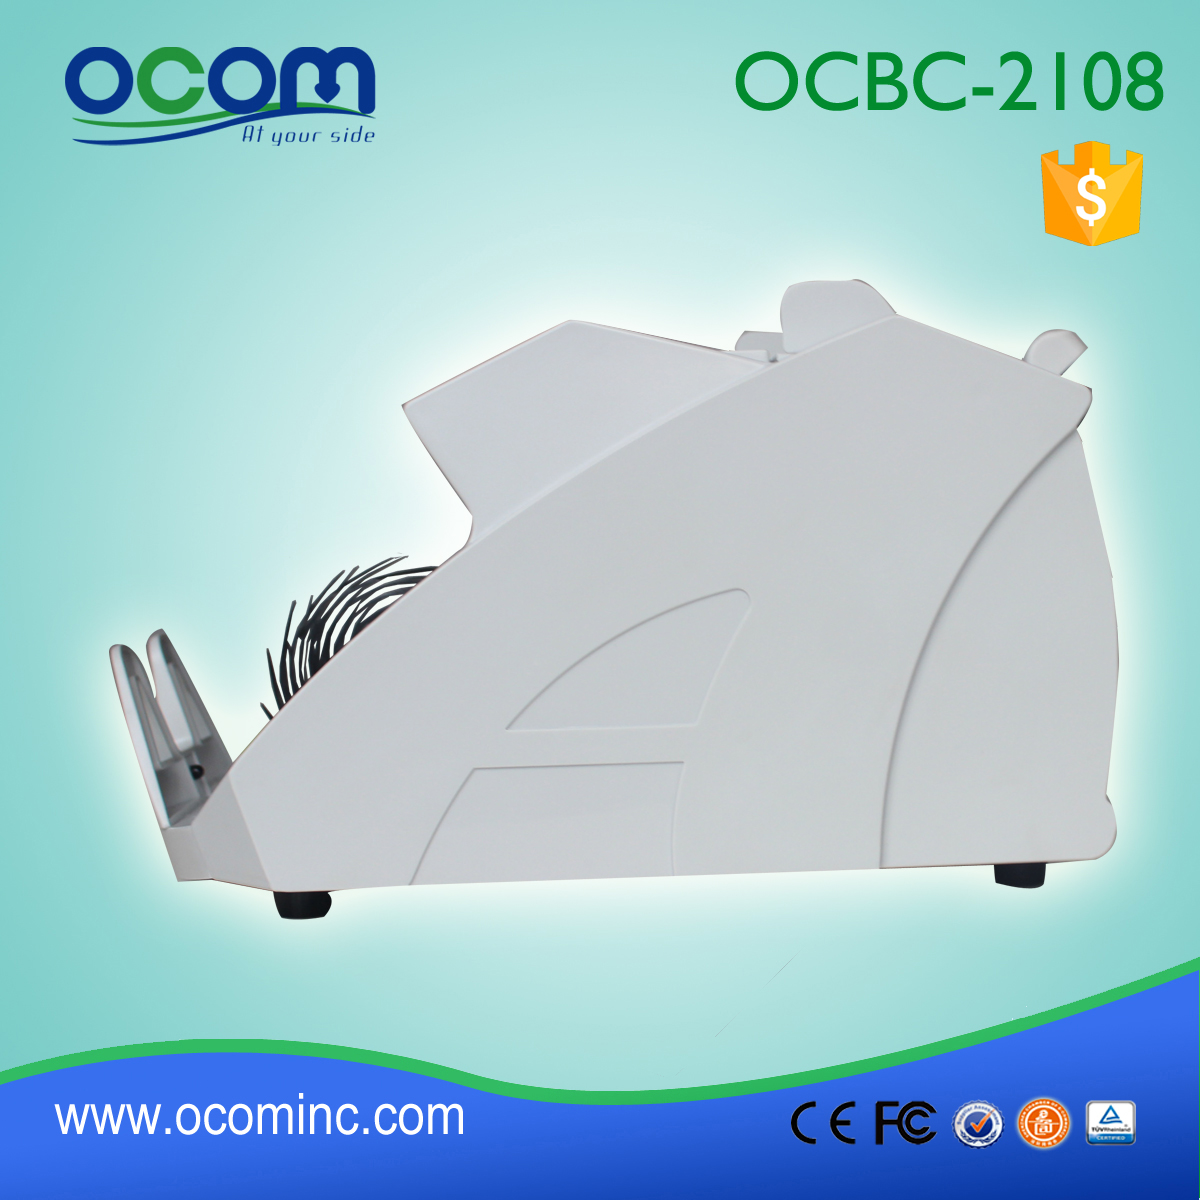 (OCBC-2108) - OCOM heeft 2016 nieuwste biljet teller met uv mg